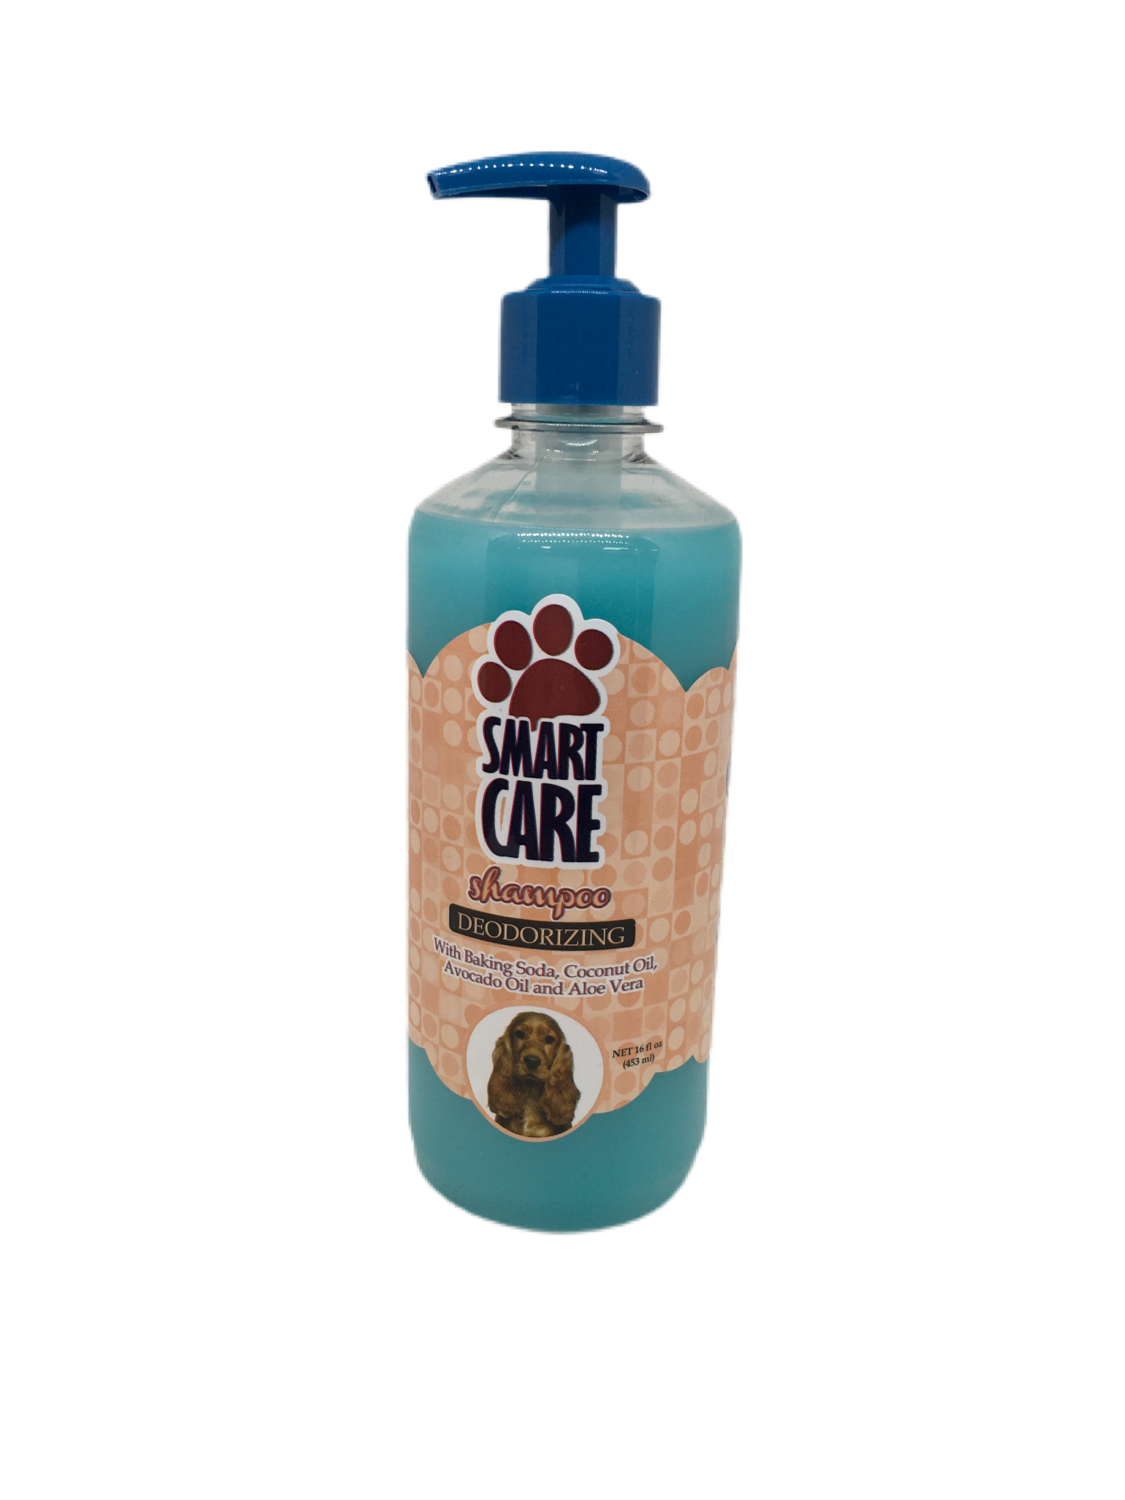 Smart Care Shampoo de Perro Deodorizing